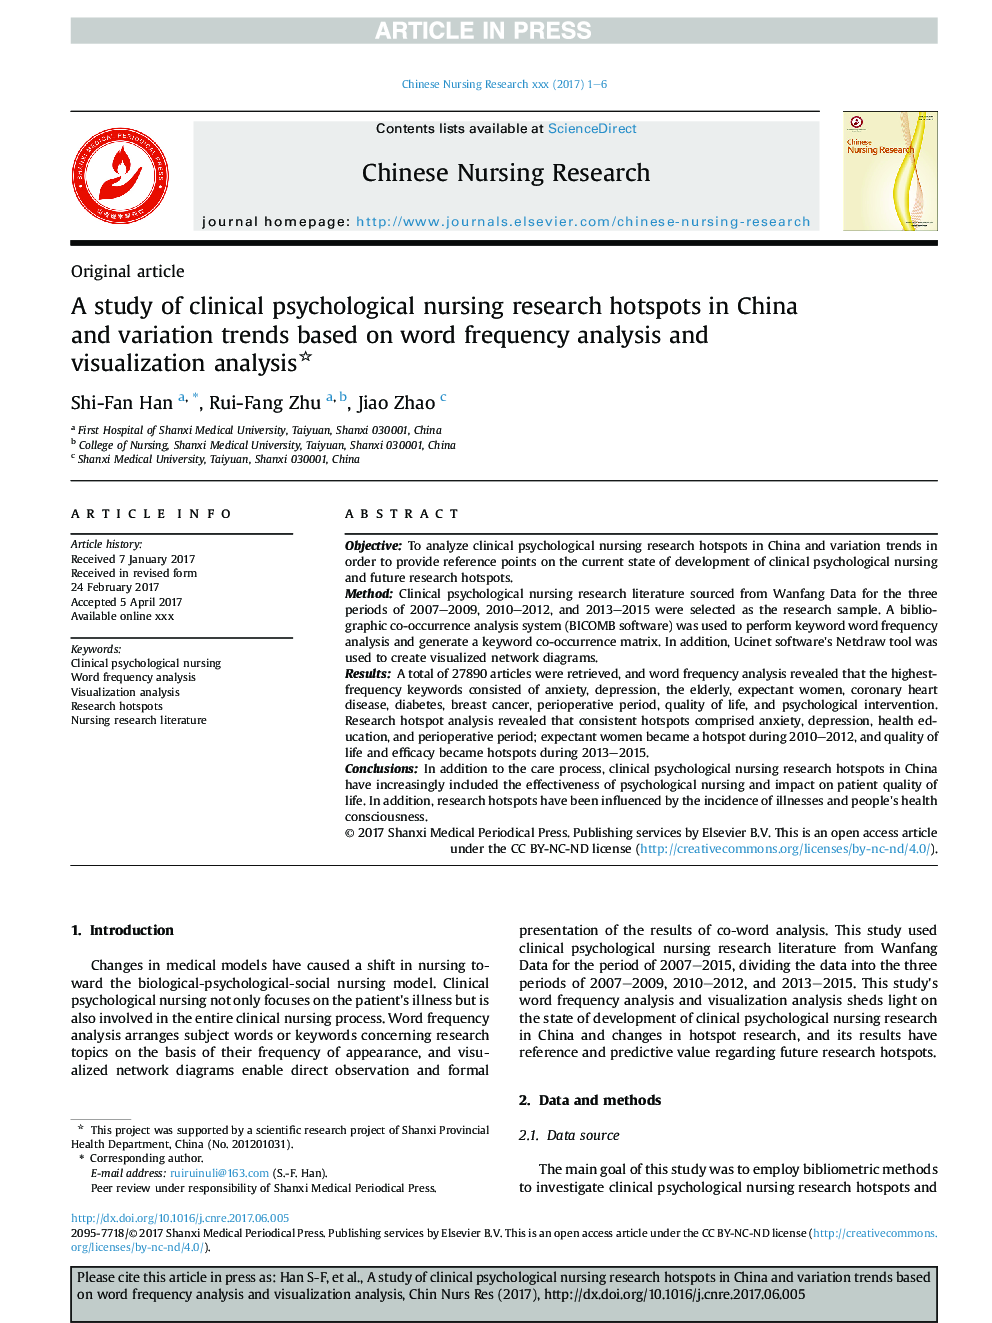 مطالعهی نقاط تحقیقاتی پرستاری بالینی روانشناختی در چین و روند تغییرات بر اساس تجزیه و تحلیل فرکانس کلمه و تجزیه و تحلیل تجسم 